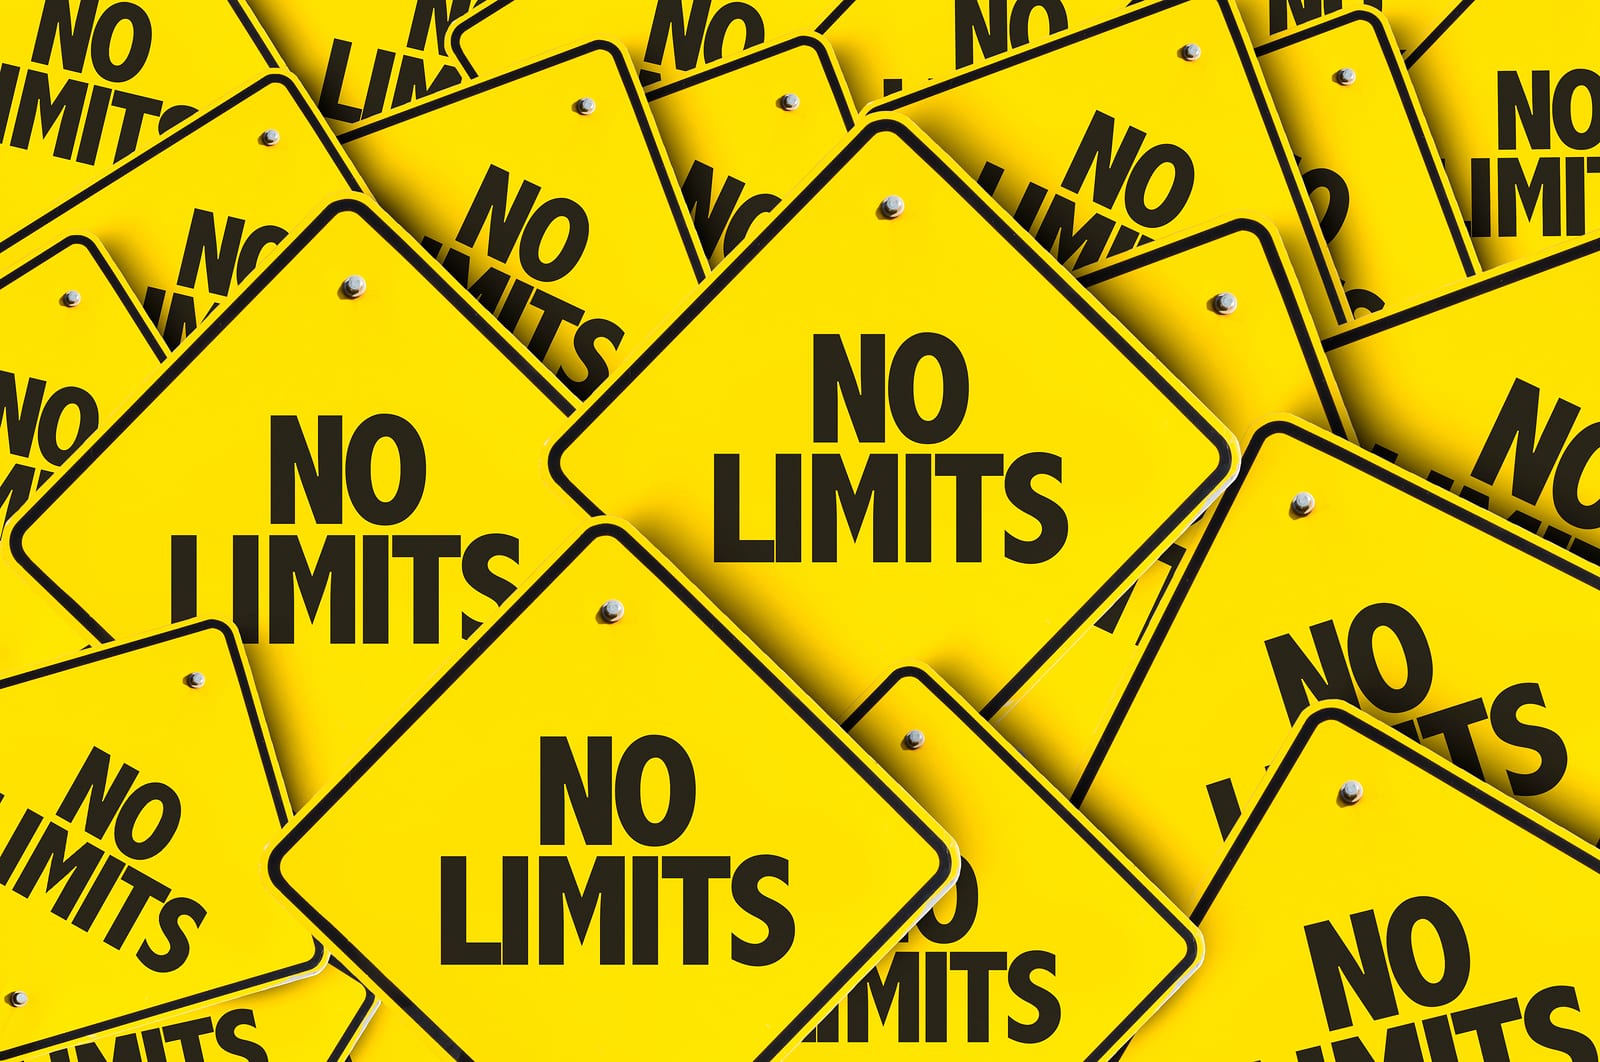 No Limits signs